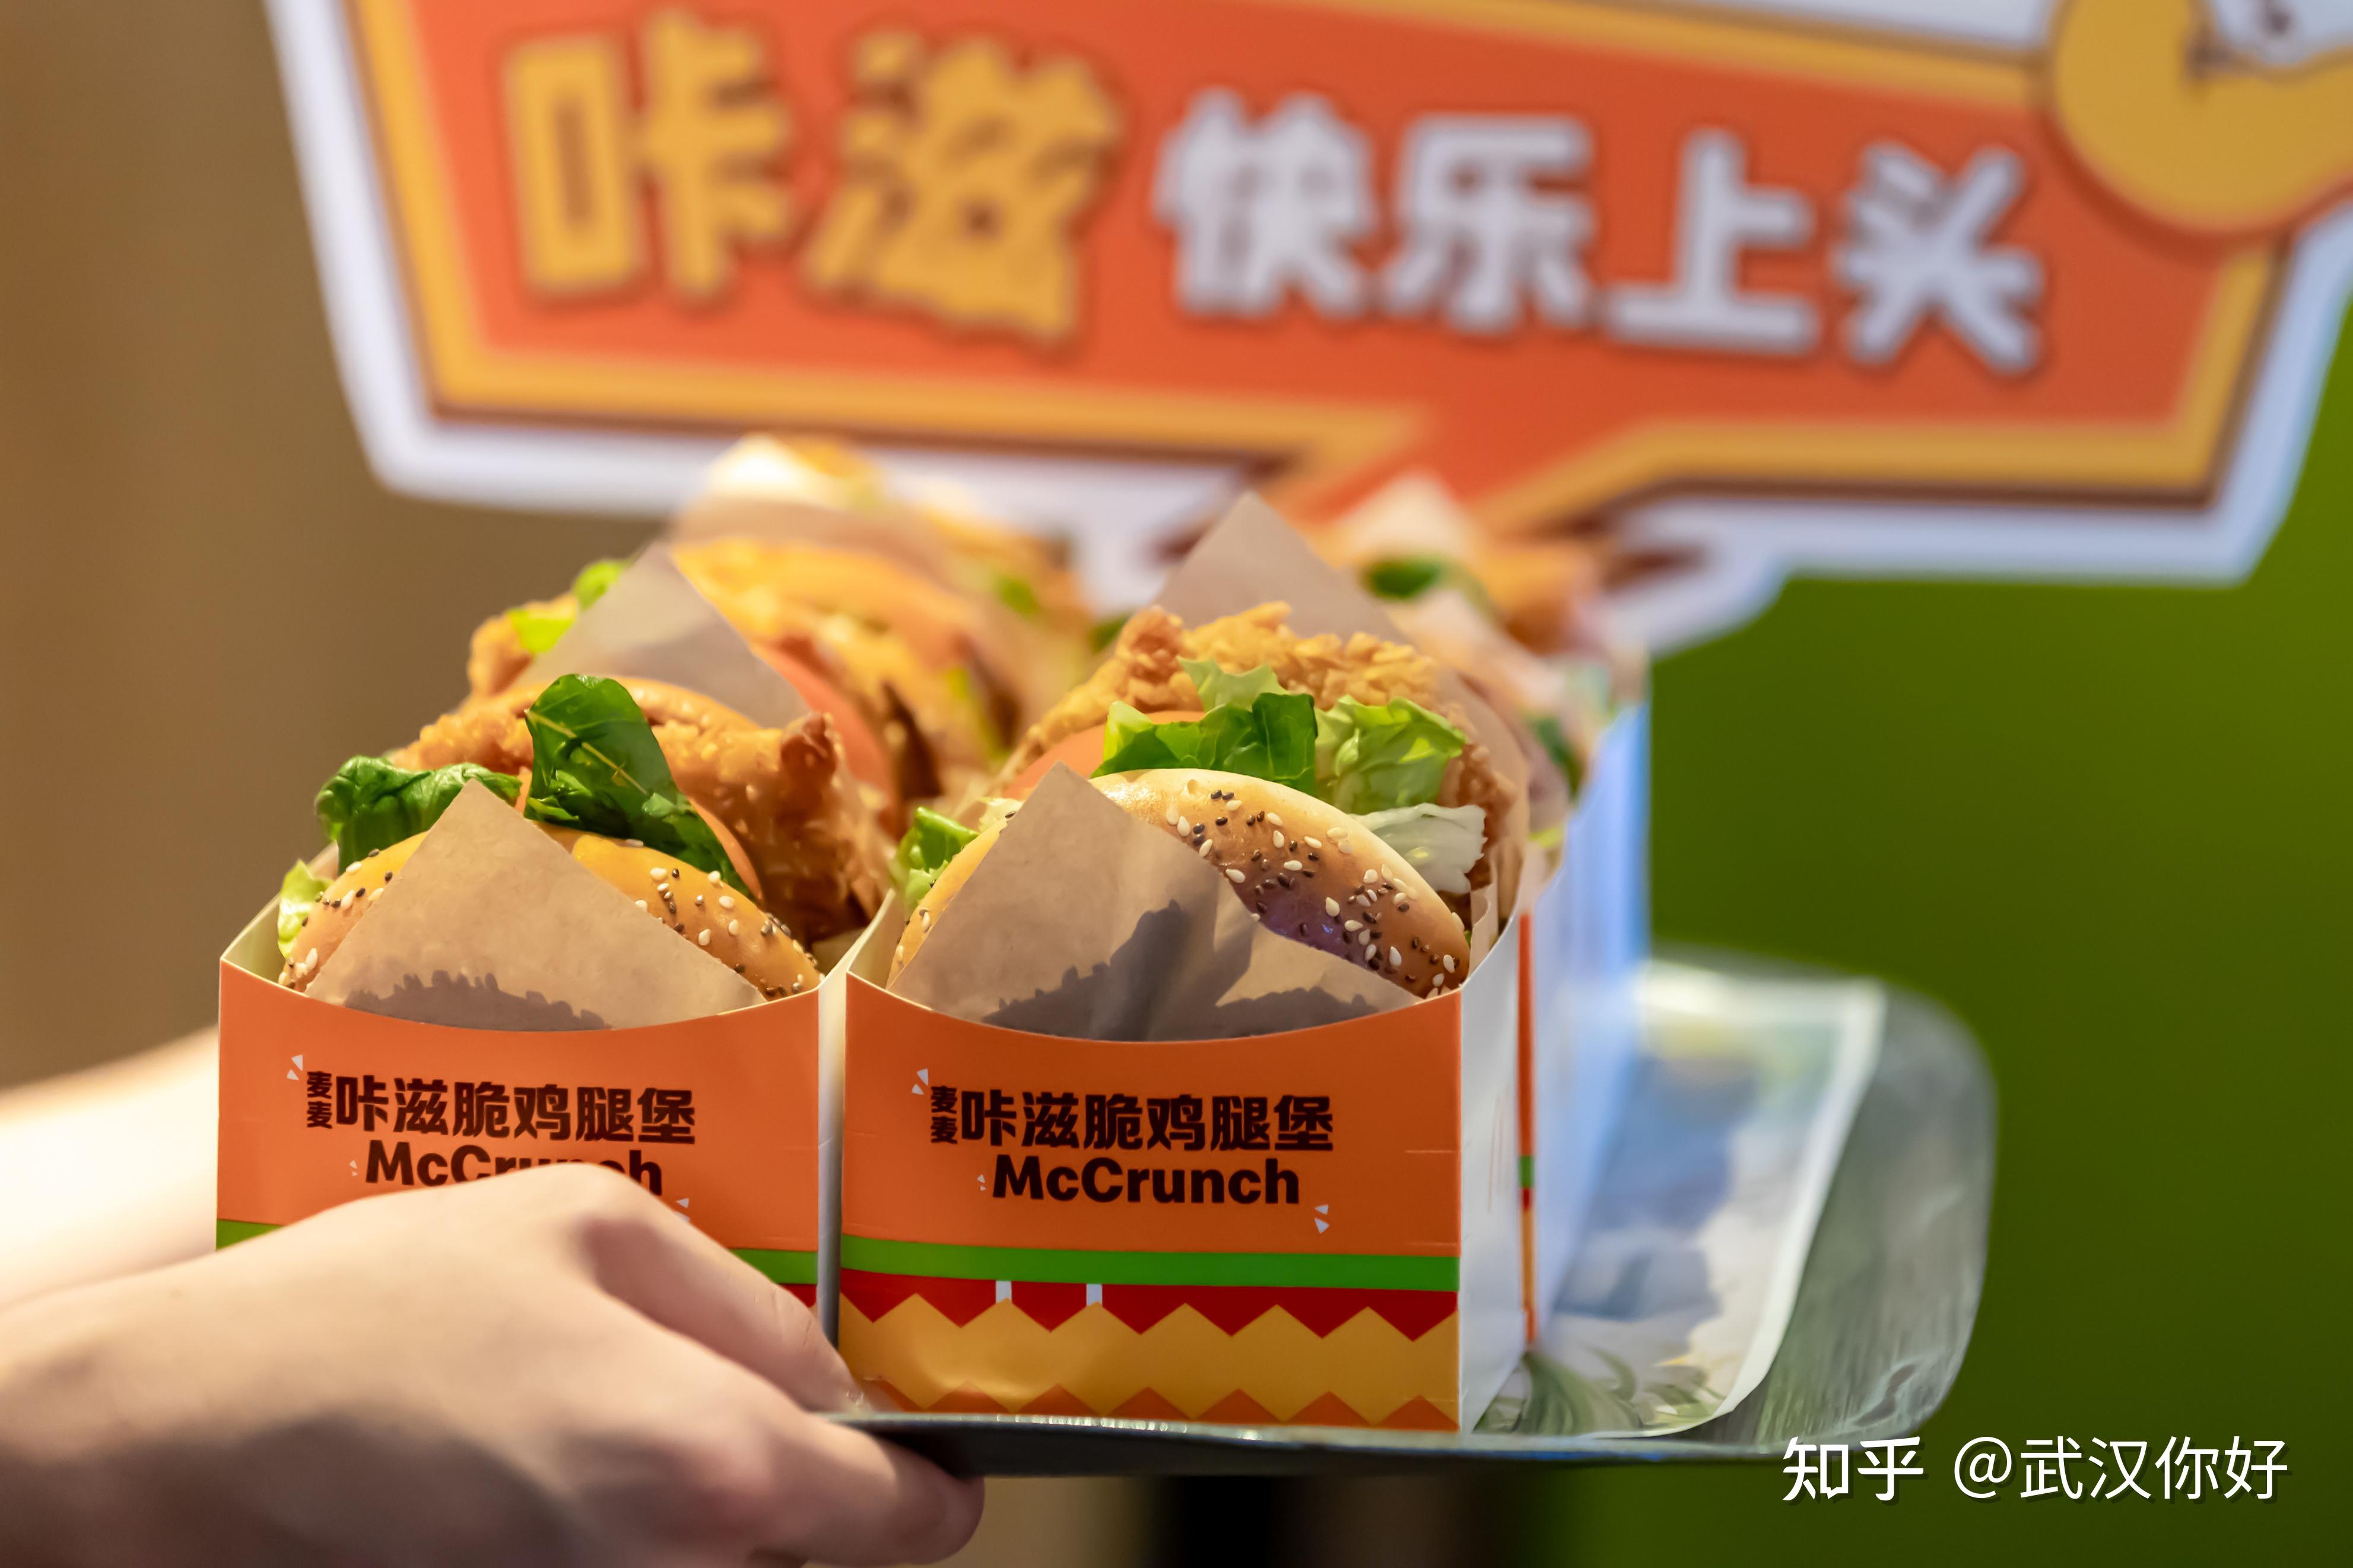 叫了个鸡官方网站_叫了个炸鸡总部_上海台享餐饮管理有限公司